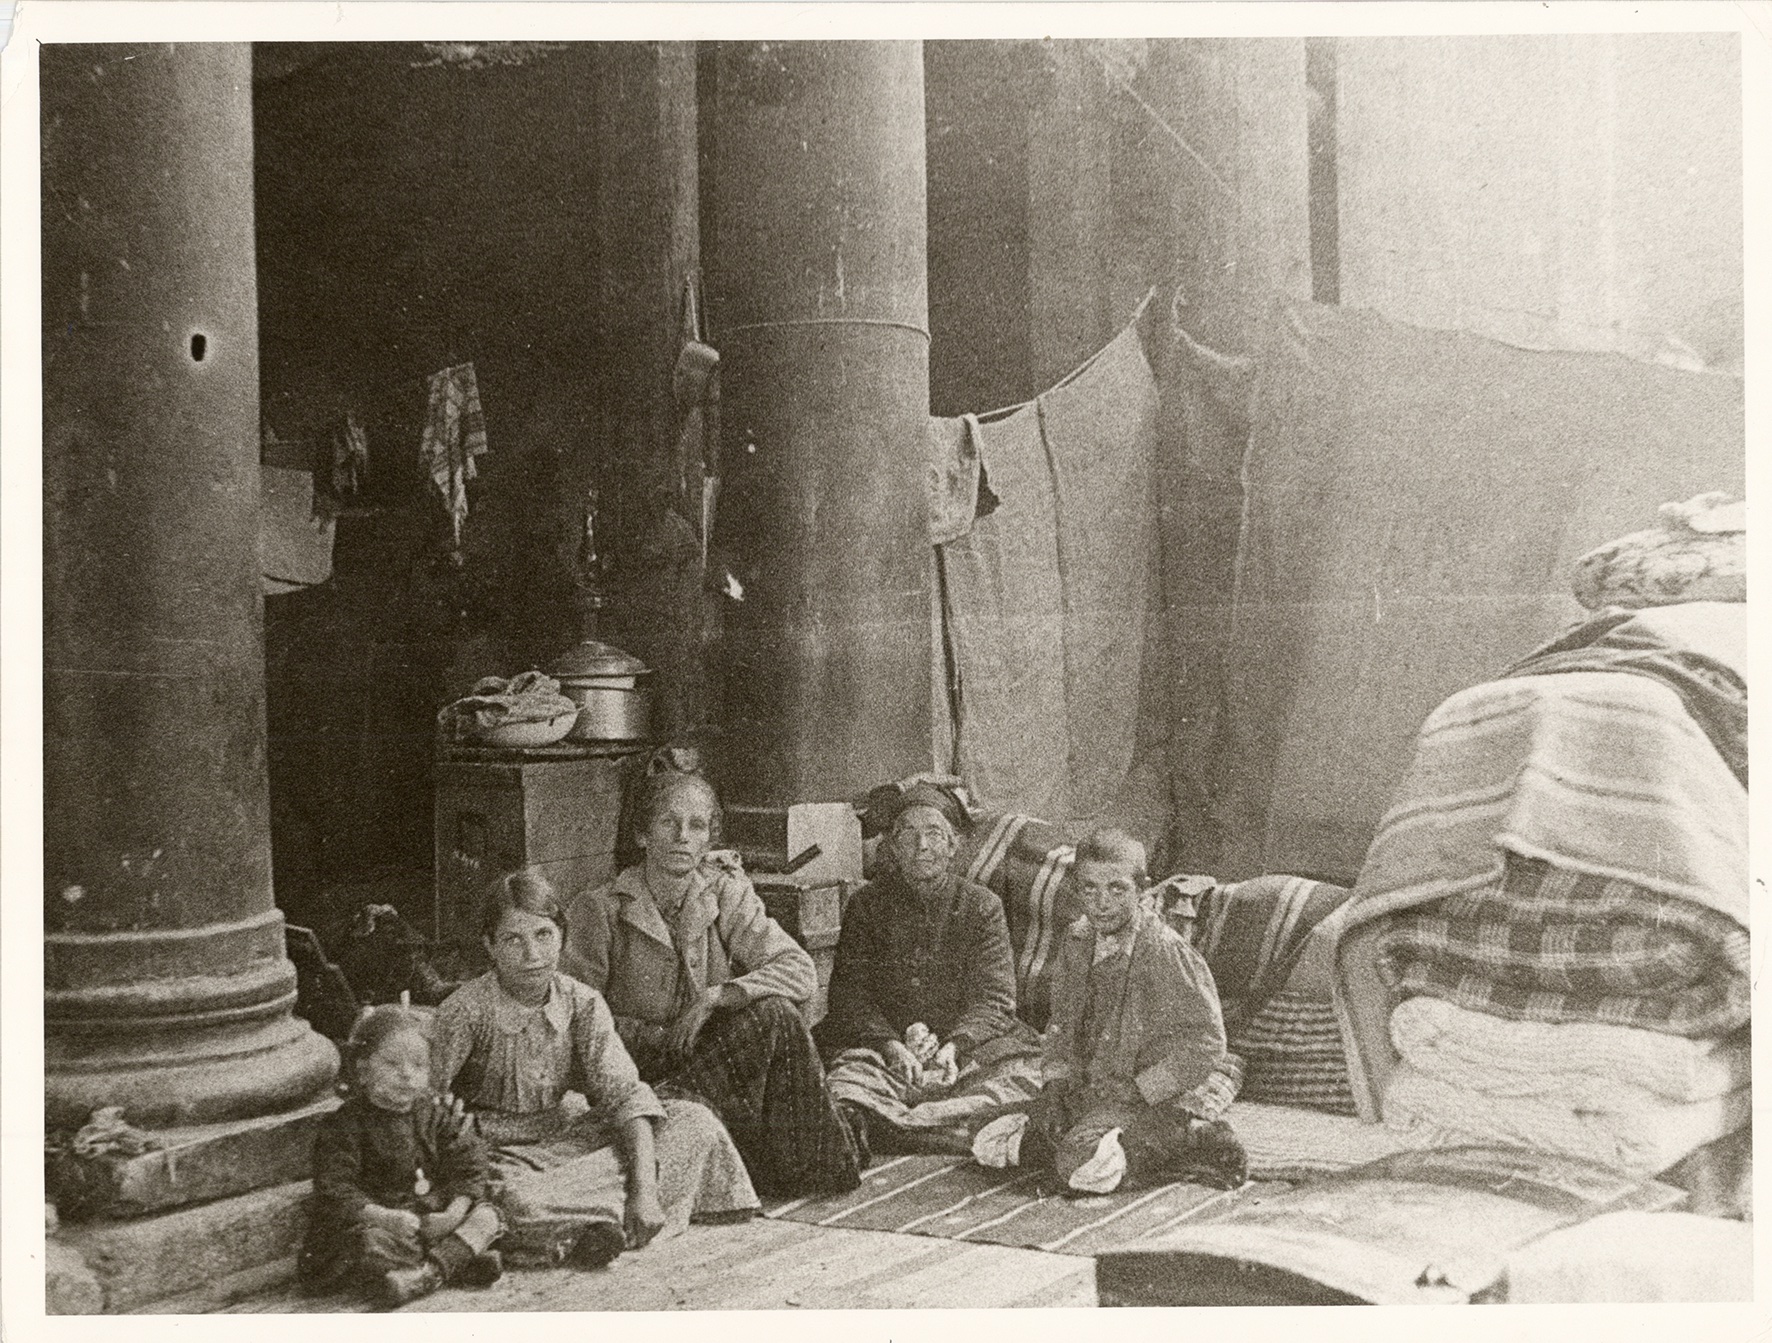 “Θεσσαλονίκη 1922: Μνημεία και Πρόσφυγες”. Επετειακή έκθεση για τη Μικρασιατική Καταστροφή στη Ροτόντα